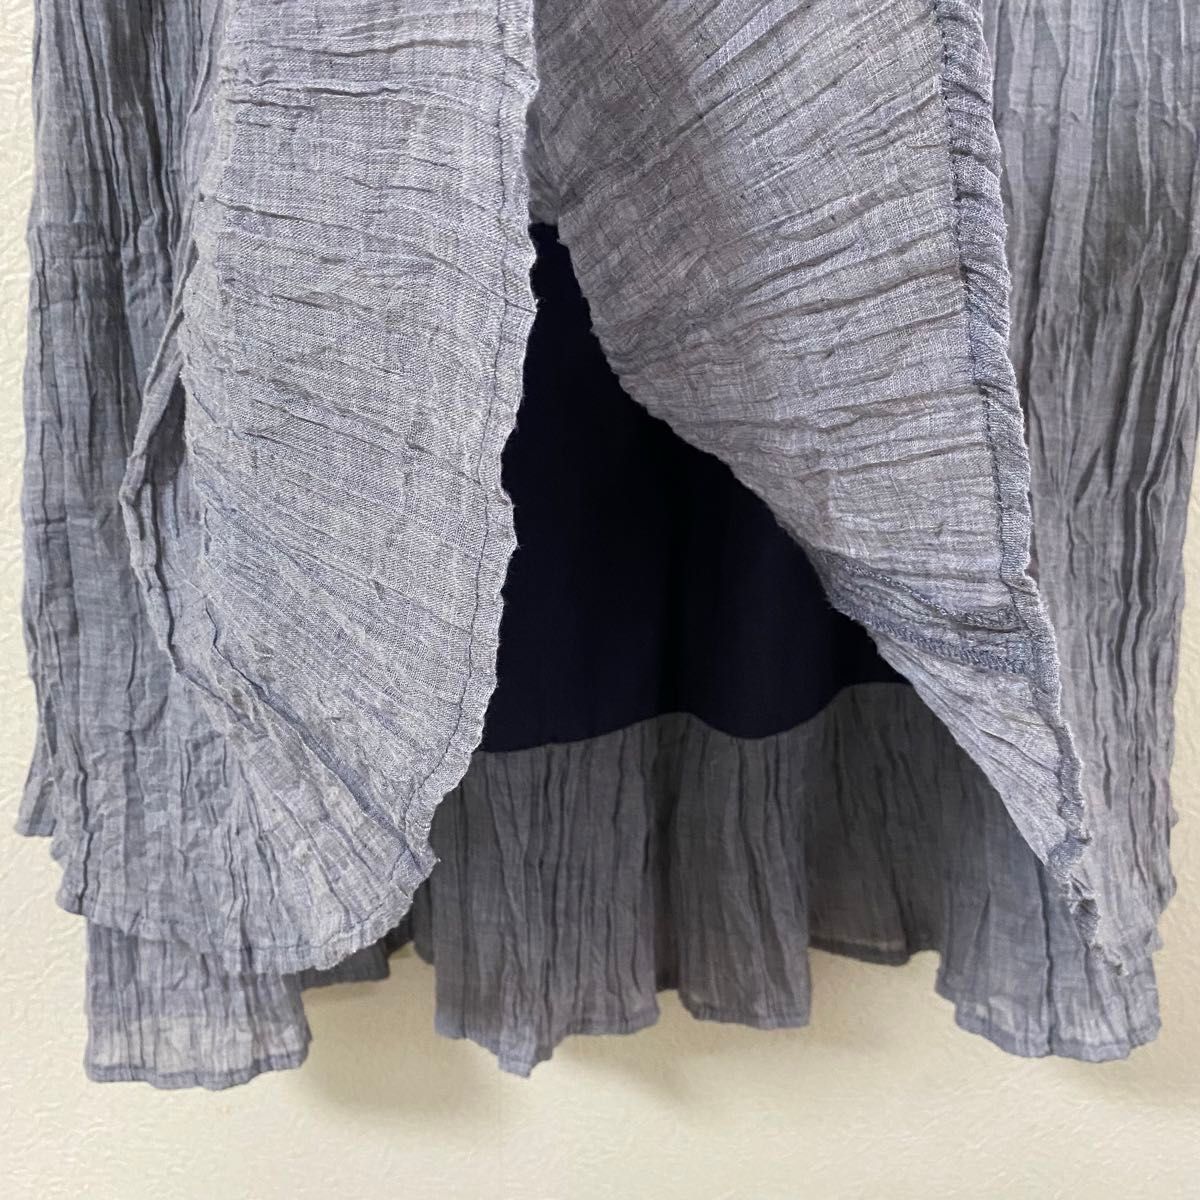 Natural Palette ナチュラルパレット　スカート　ロング　　二重　シワ加工　ボリューム　ウエストゴム　ブルー系